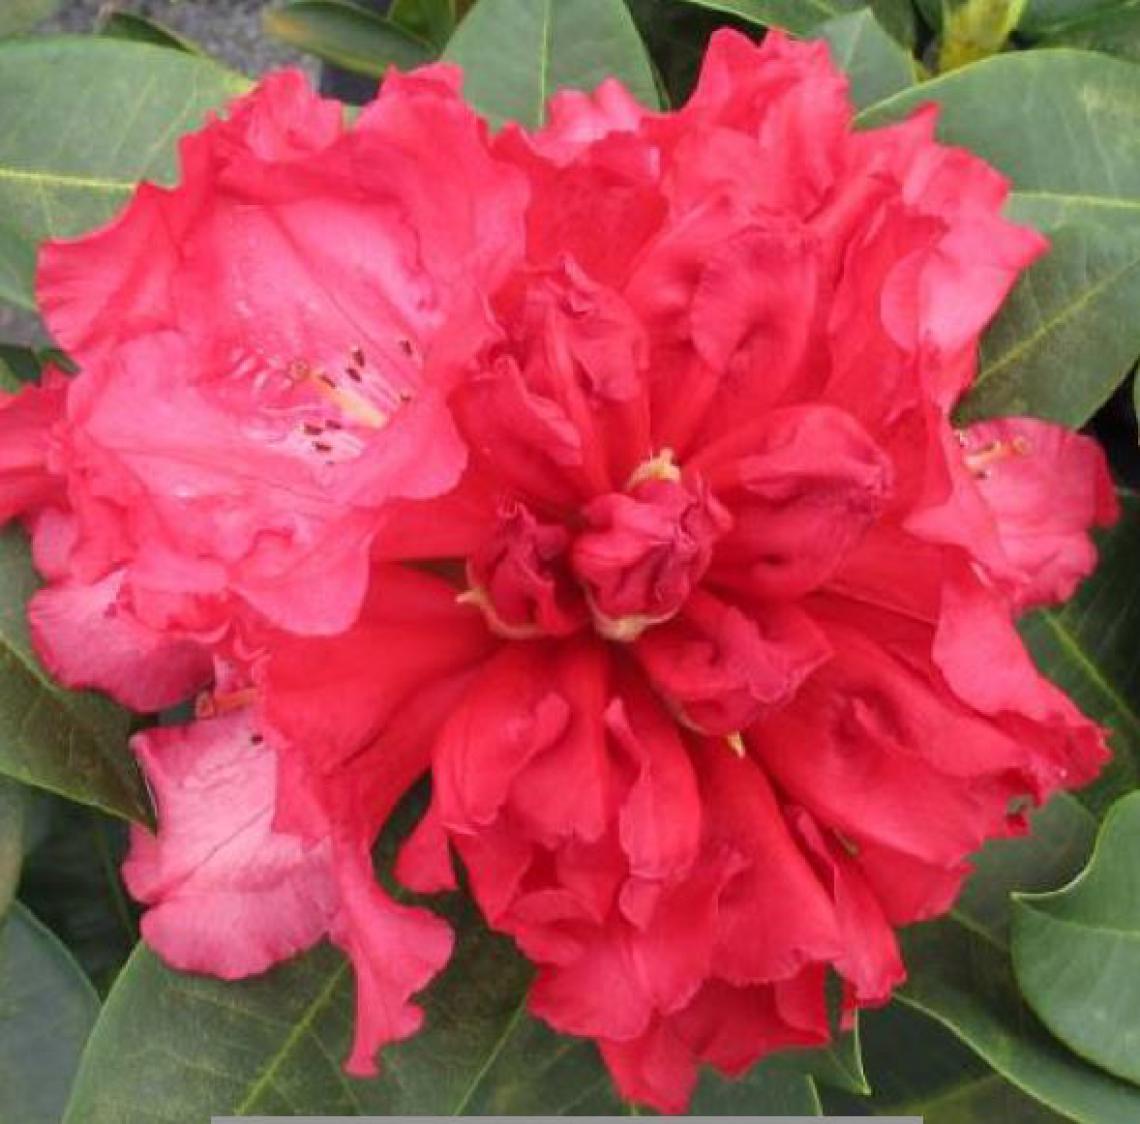 Rhododendron 'Cosmopolitan' - Immergrun / Garden Center Eshop - photo 8